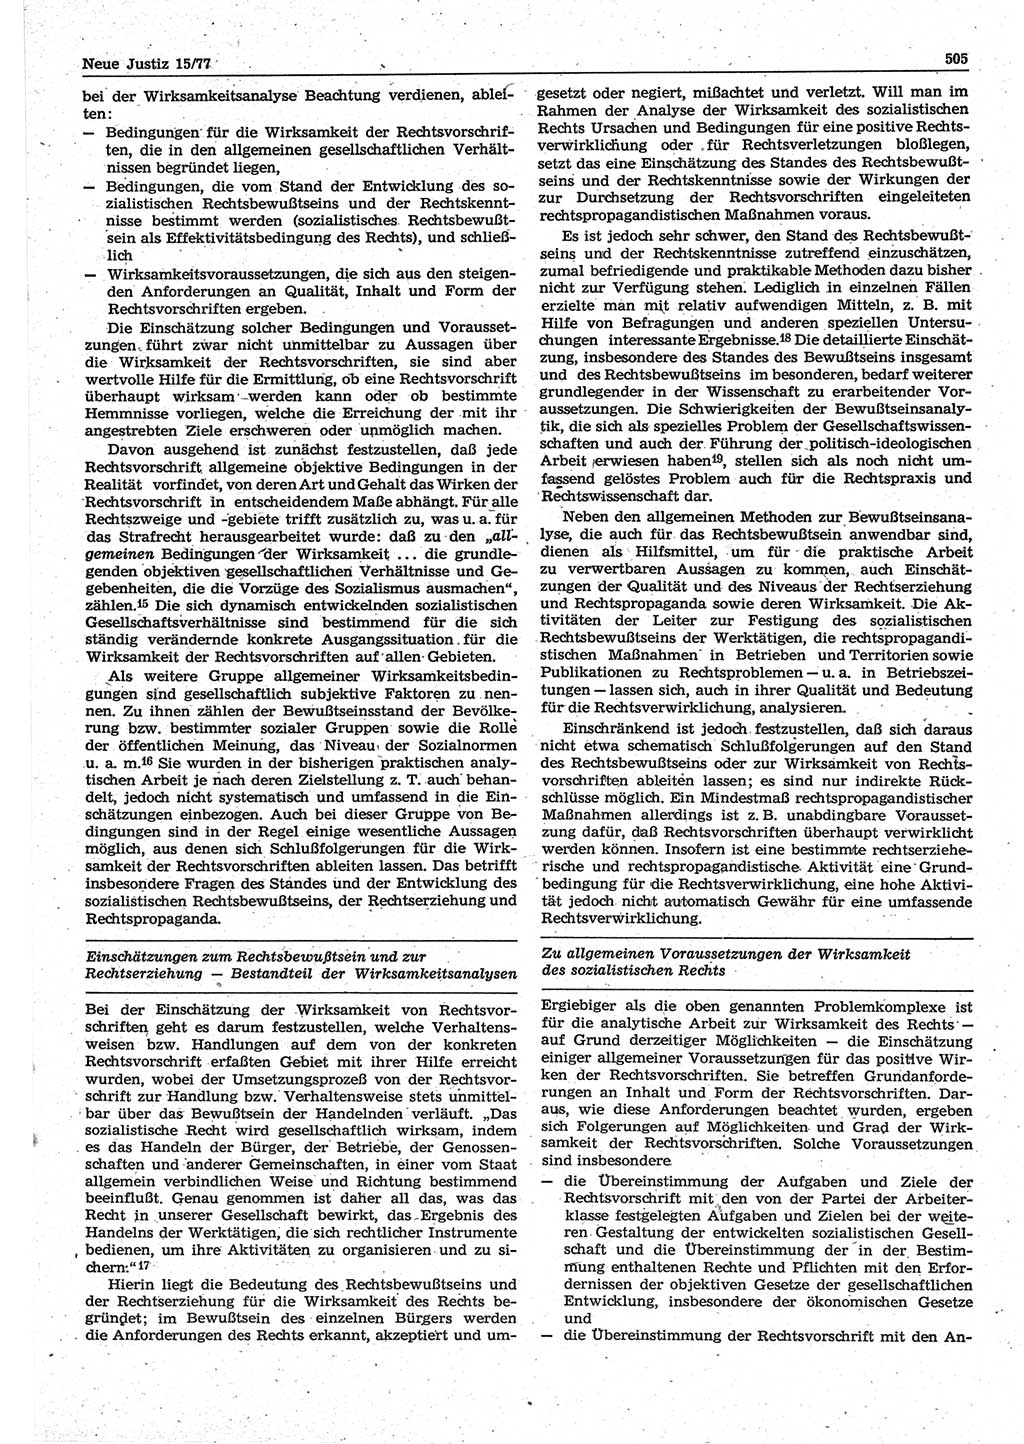 Neue Justiz (NJ), Zeitschrift für Recht und Rechtswissenschaft-Zeitschrift, sozialistisches Recht und Gesetzlichkeit, 31. Jahrgang 1977, Seite 505 (NJ DDR 1977, S. 505)